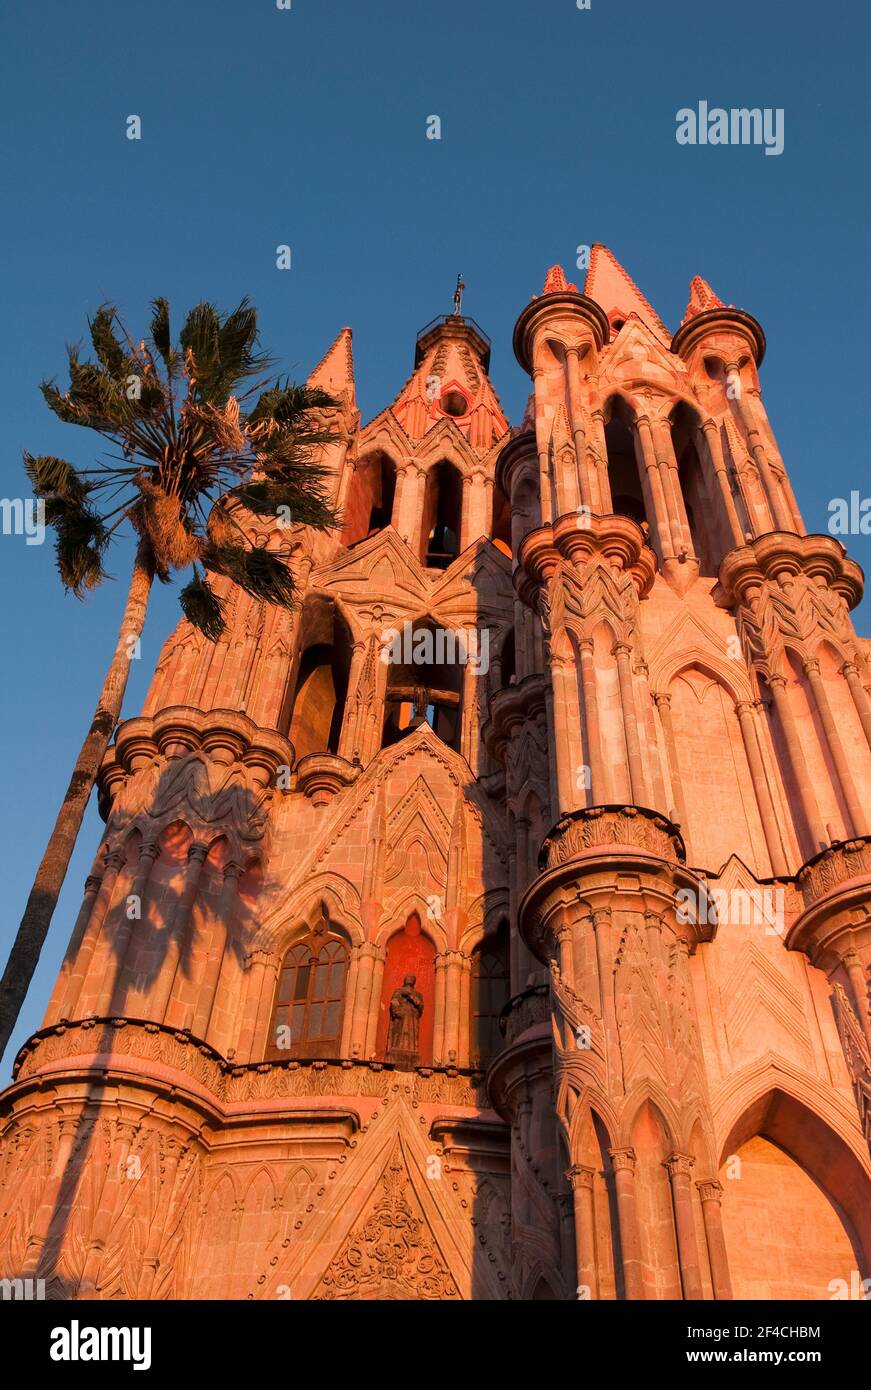 Parroquia de San Miguel Arcangel, la célèbre cathédrale de San Miguel de Allende, Guanajuato, Mexique. Banque D'Images